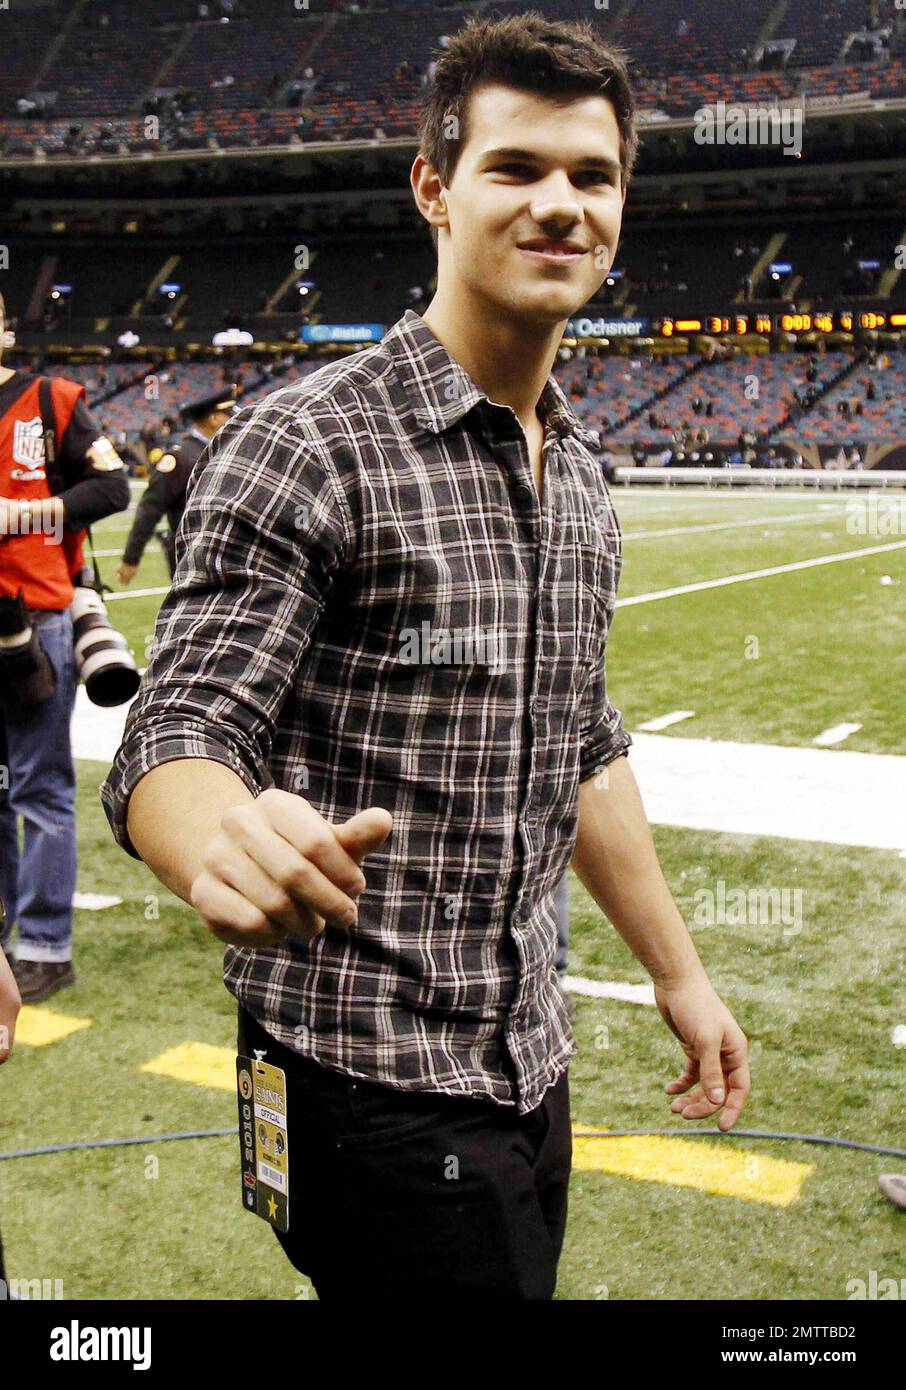 Taylor Lautner firma un autógrafo mientras está en el campo de fútbol en  Louisiana Superdome después de la St. Louis Rams contra New Orleans Saints  juego. La estrella de 'Crepúsculo' caminó con